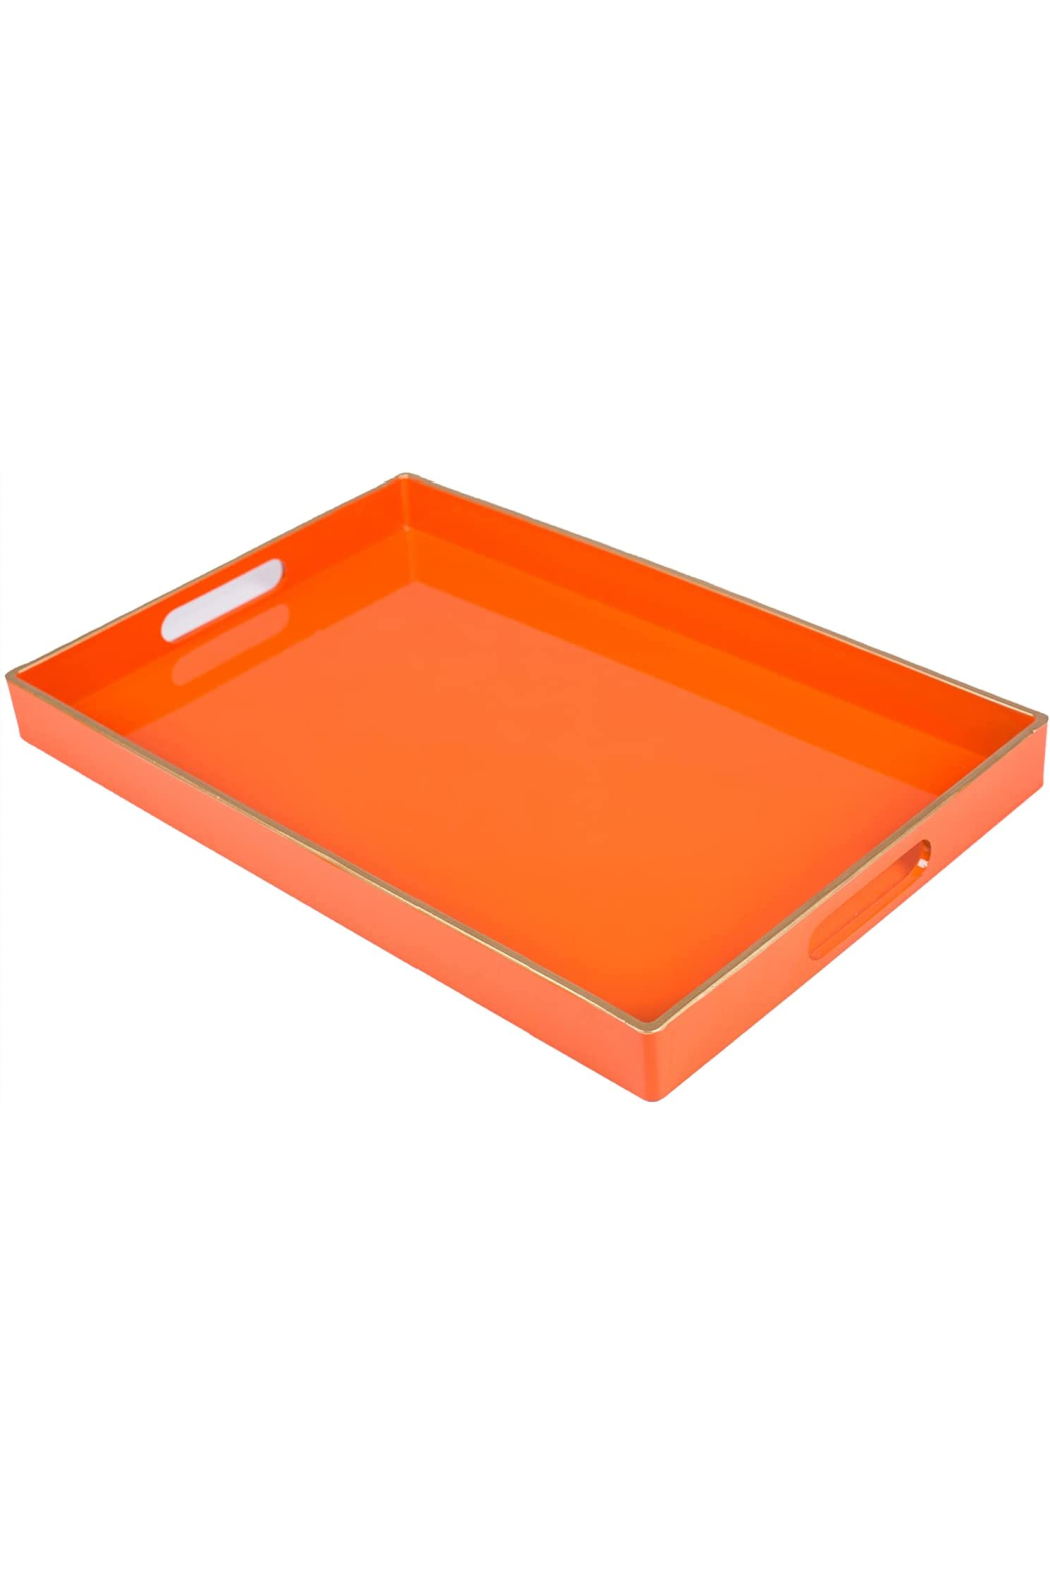 Abstract resin tray - Multicolor Tray - Vanity Tray - Jewelry Tray -  Serving Tray 